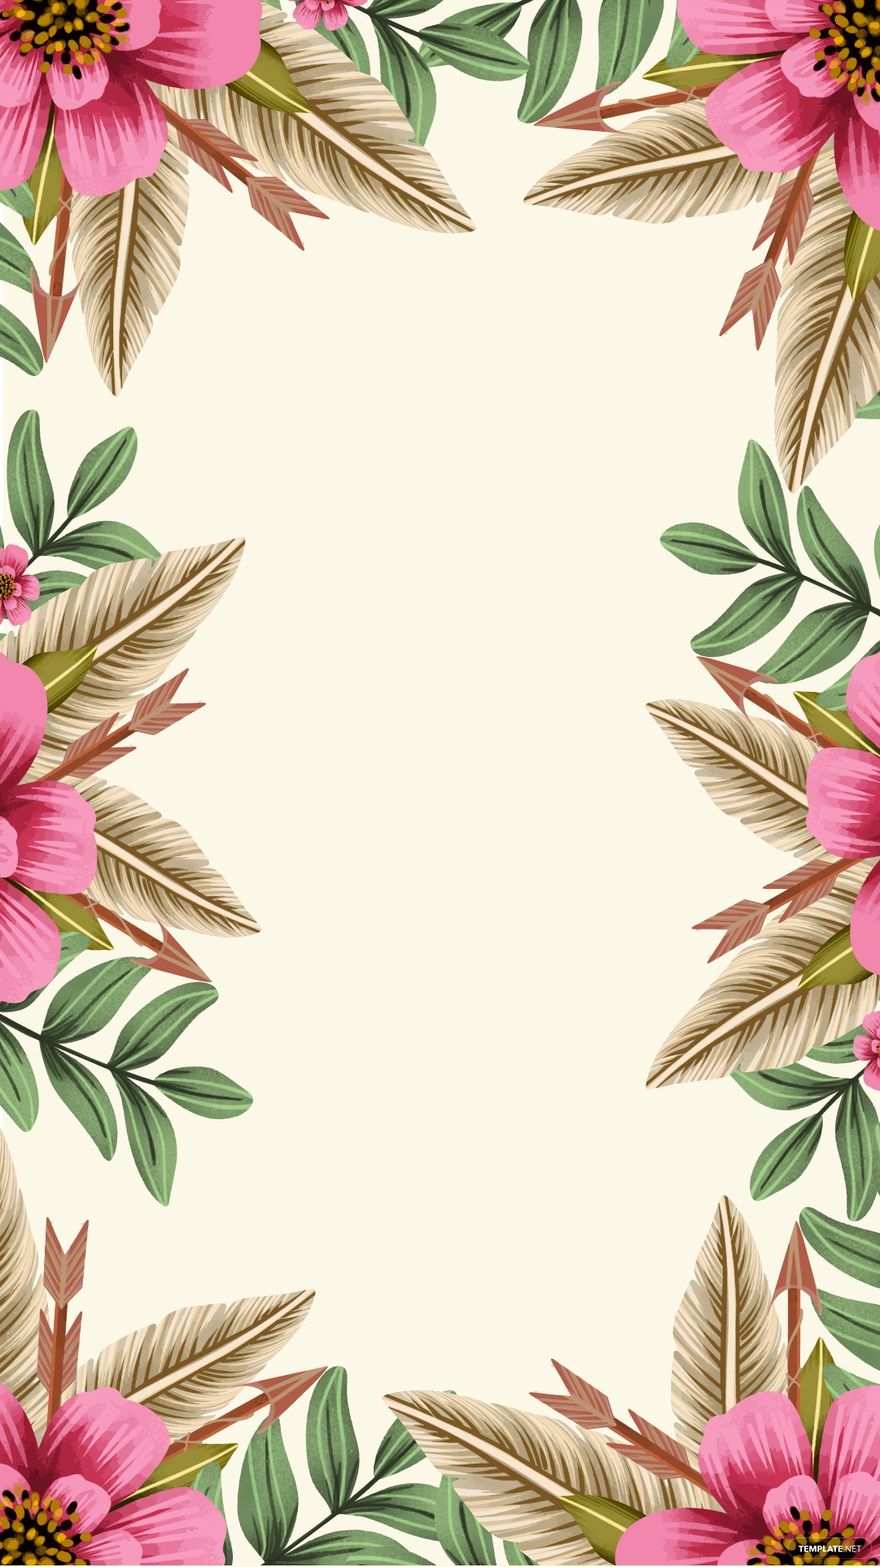 Free Boho Floral Background in Illustrator, EPS, SVG, JPG